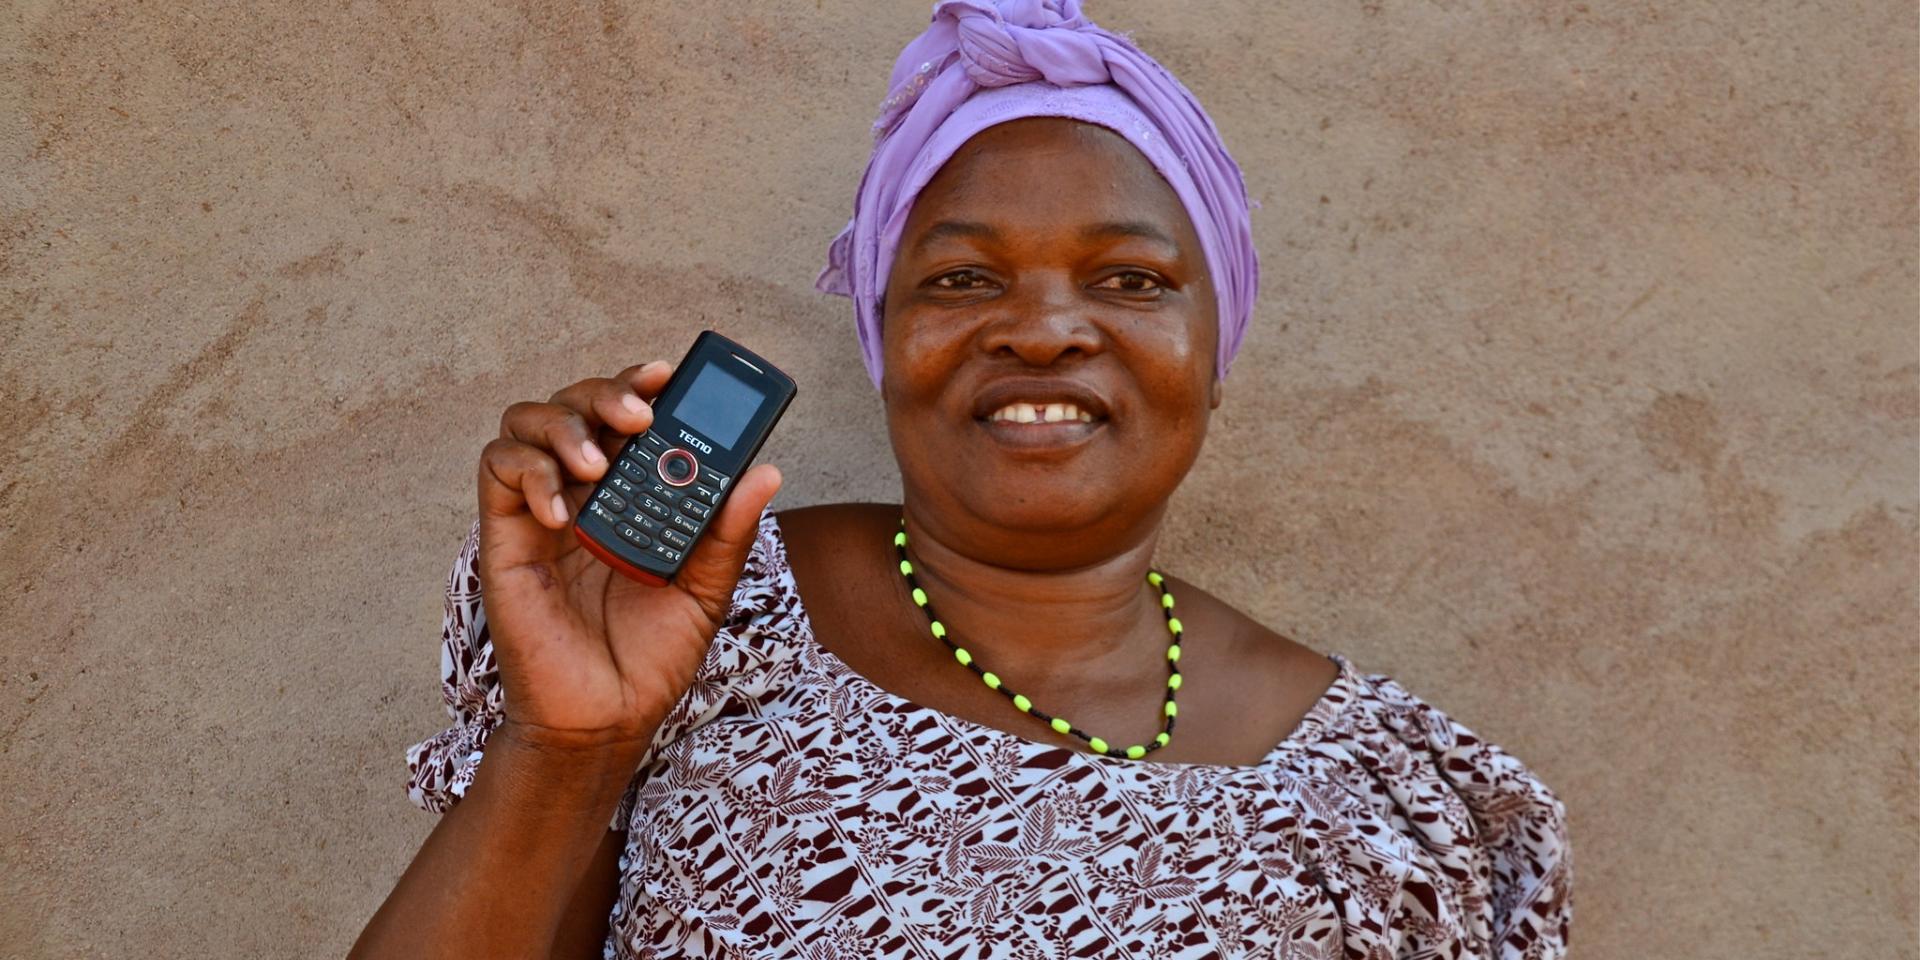 Woman farmer with phone in Tanzania